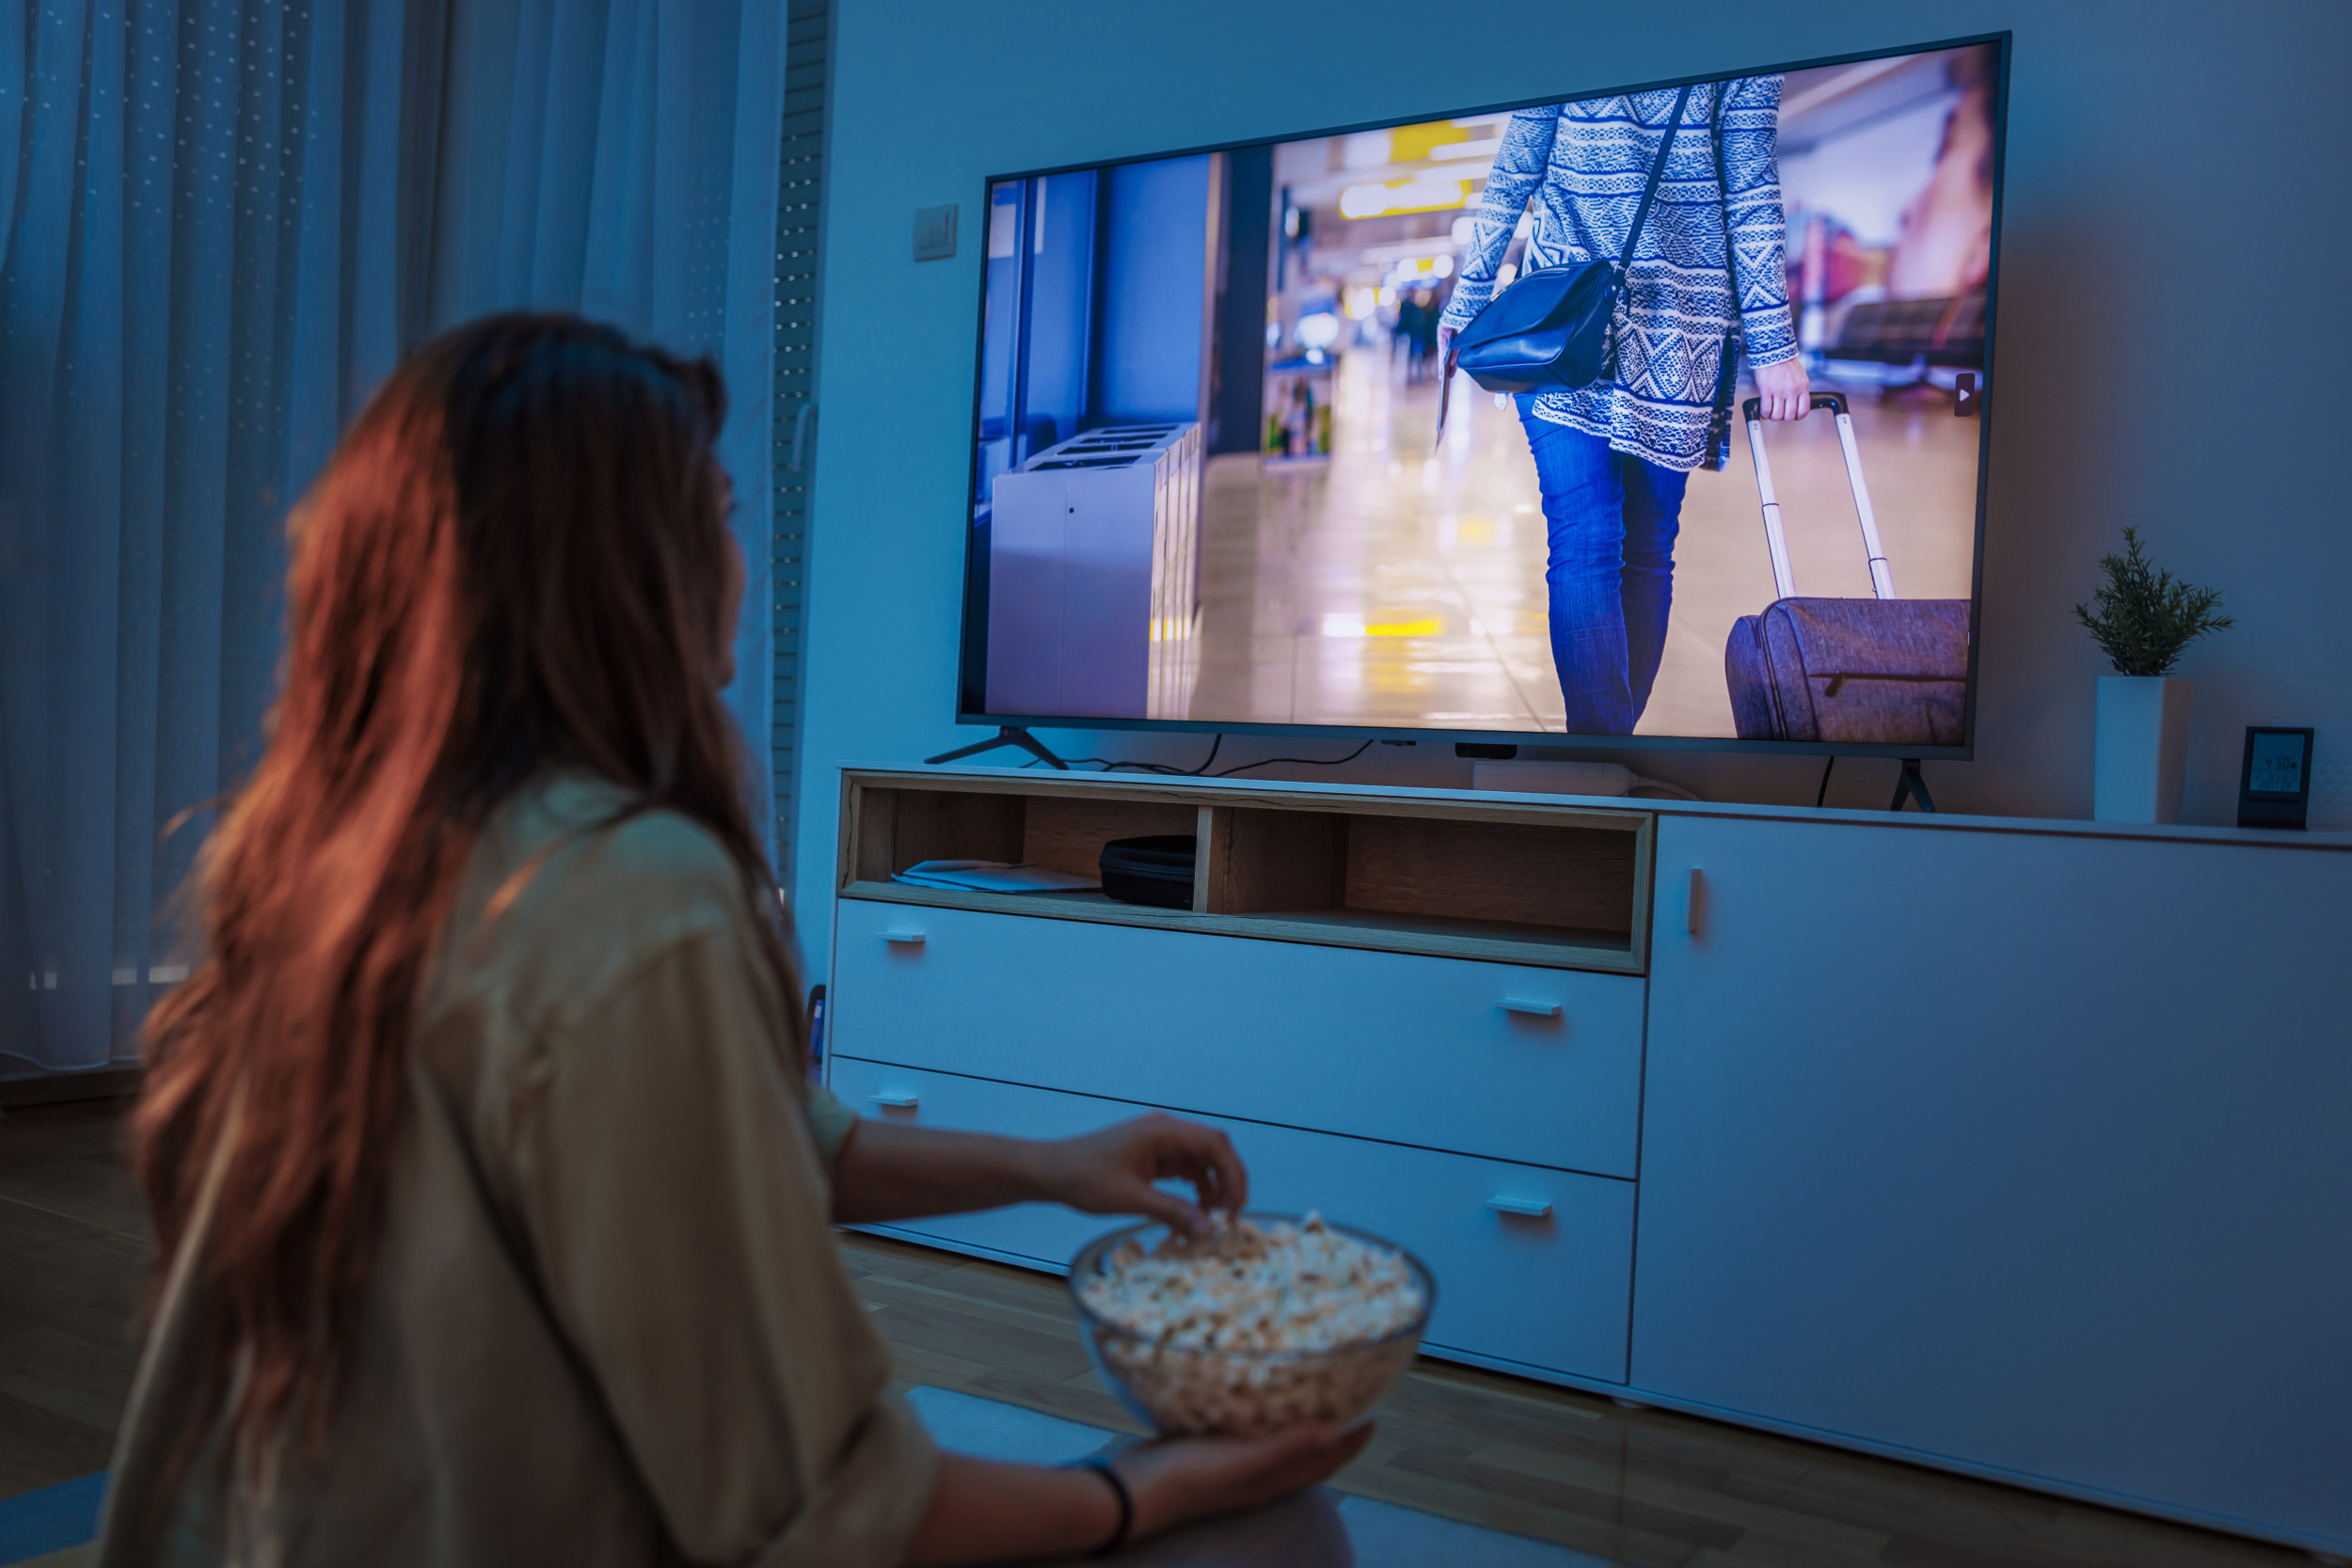 Гледането на твърде много телевизия може да причини проблем с уринирането през нощта